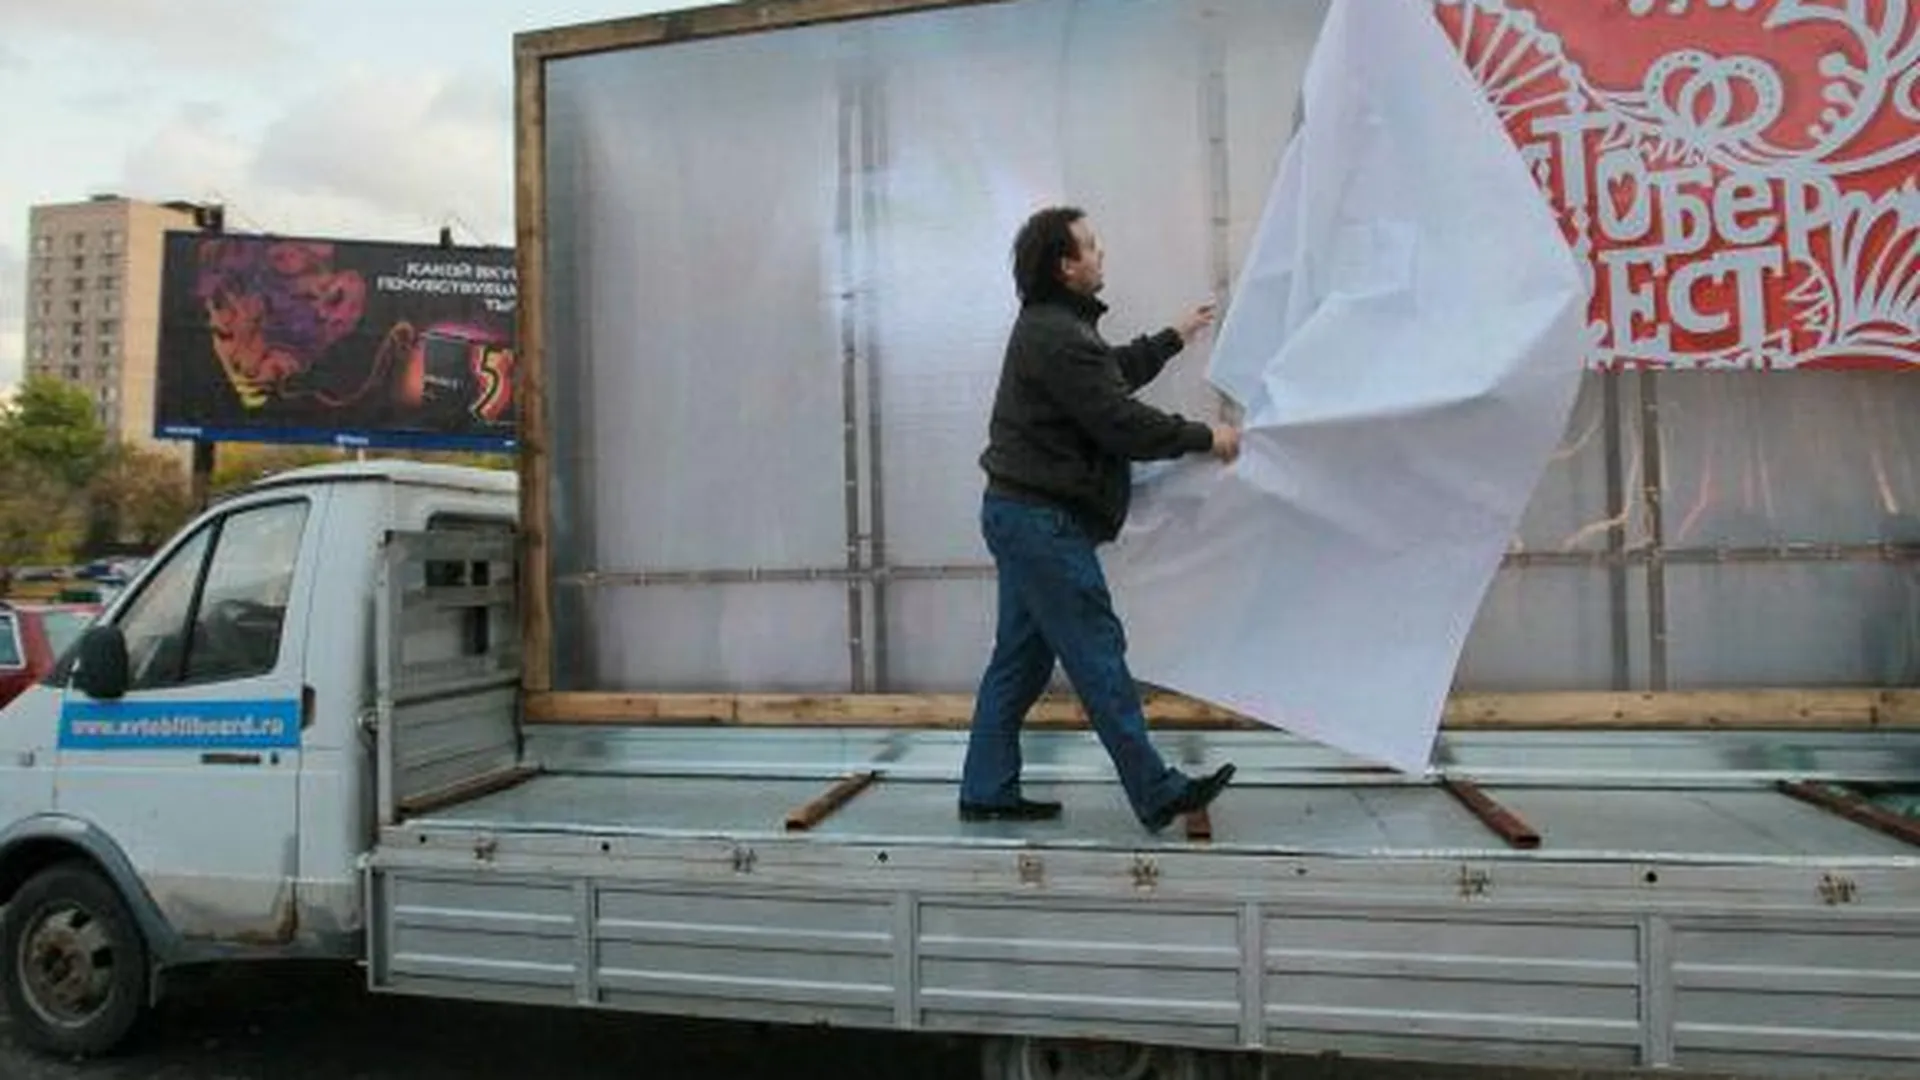 Порядка 200 объектов незаконной рекламы демонтировали в Коломне